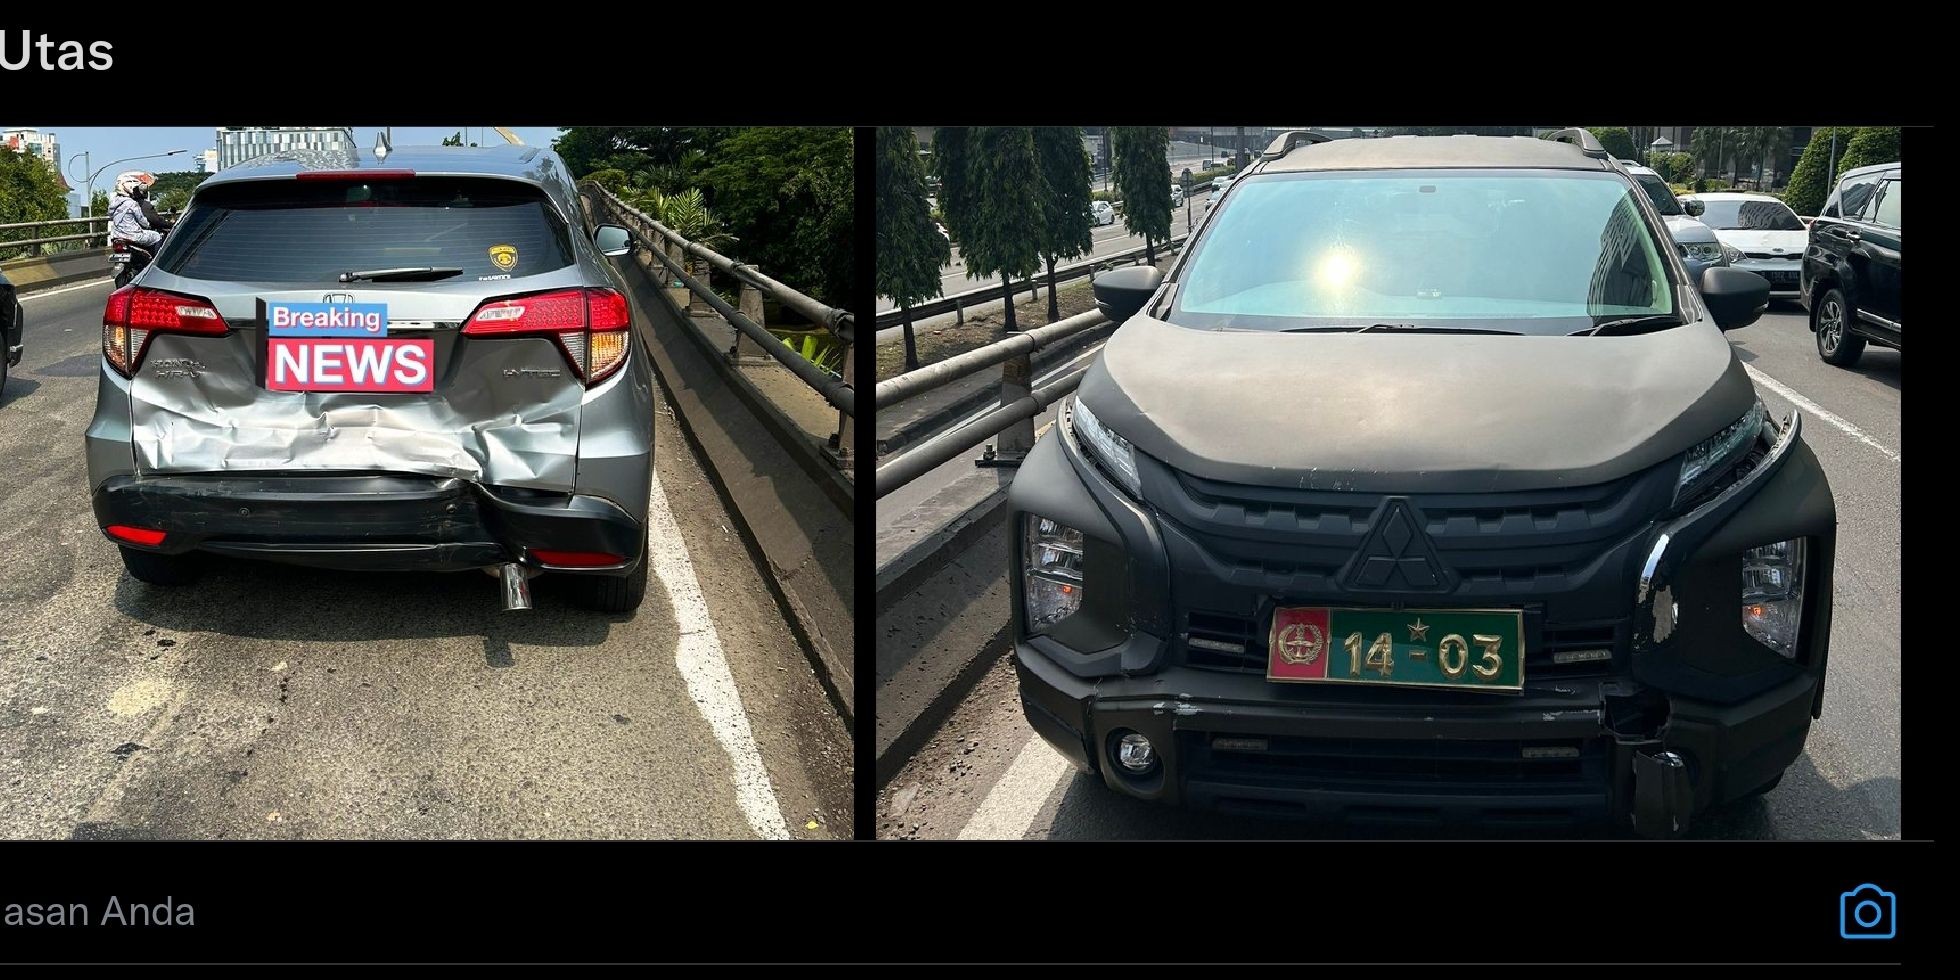 Mobil Dinas TNI Tabrak HRV hingga Ringsek di Pancoran, Korban Protes Hanya Diberi Ganti Rugi Rp 1 Juta